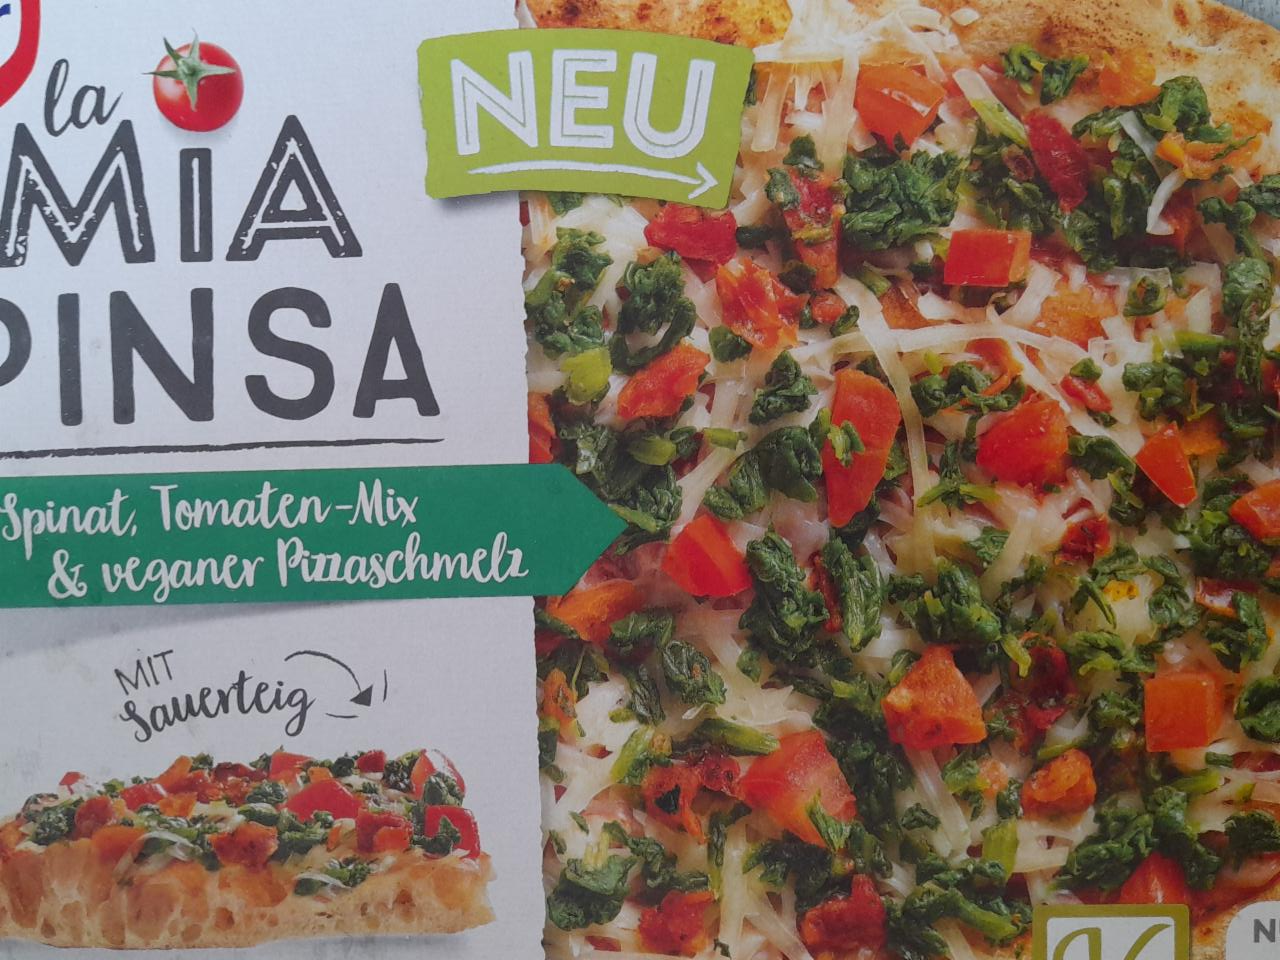 La Mia nutriční Spinat, Pinsa - Pizzaschmelz hodnoty Dr.Oetker Tomaten-Mix veganer & kJ a kalorie